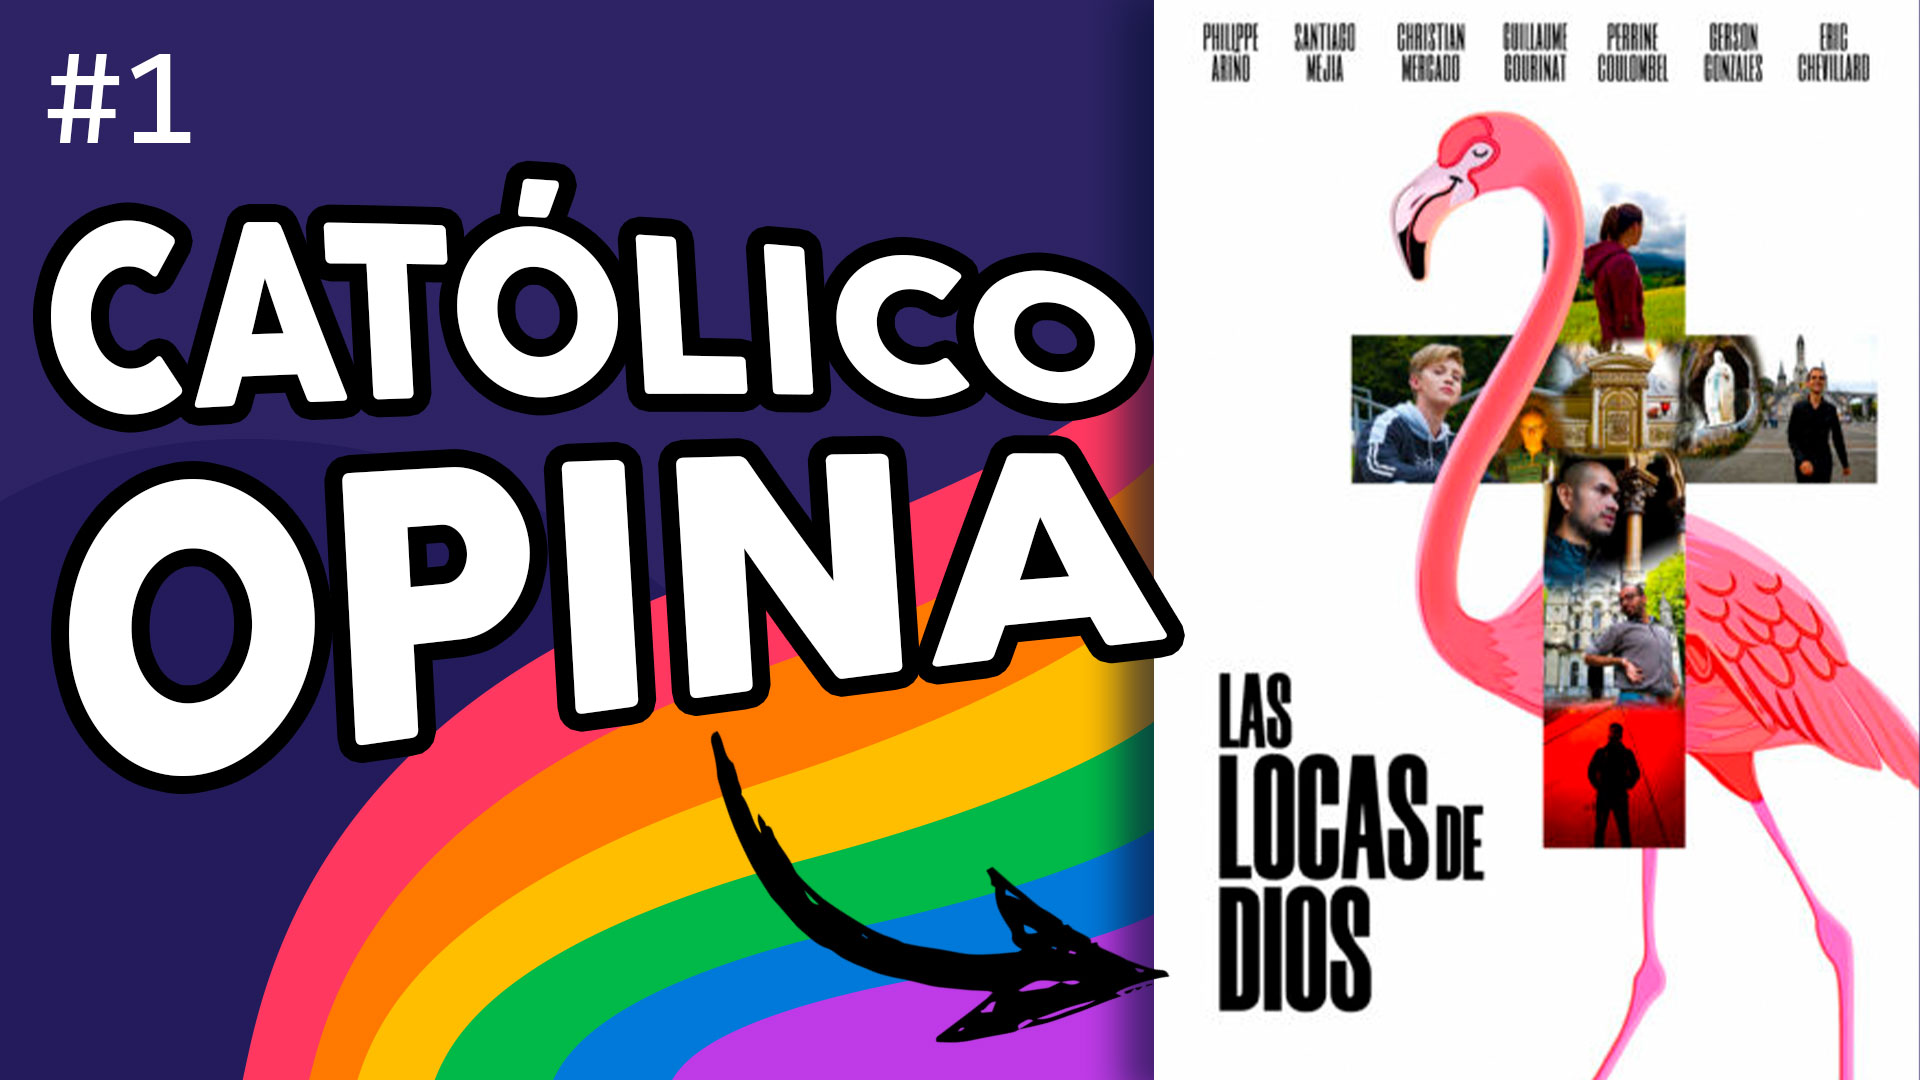 Opinión del documental Las Locas de Dios, sobre homosexualidad. Enriquísimo Tv canal católico de YouTube y Tik Tok. Enrique Vidal Flores